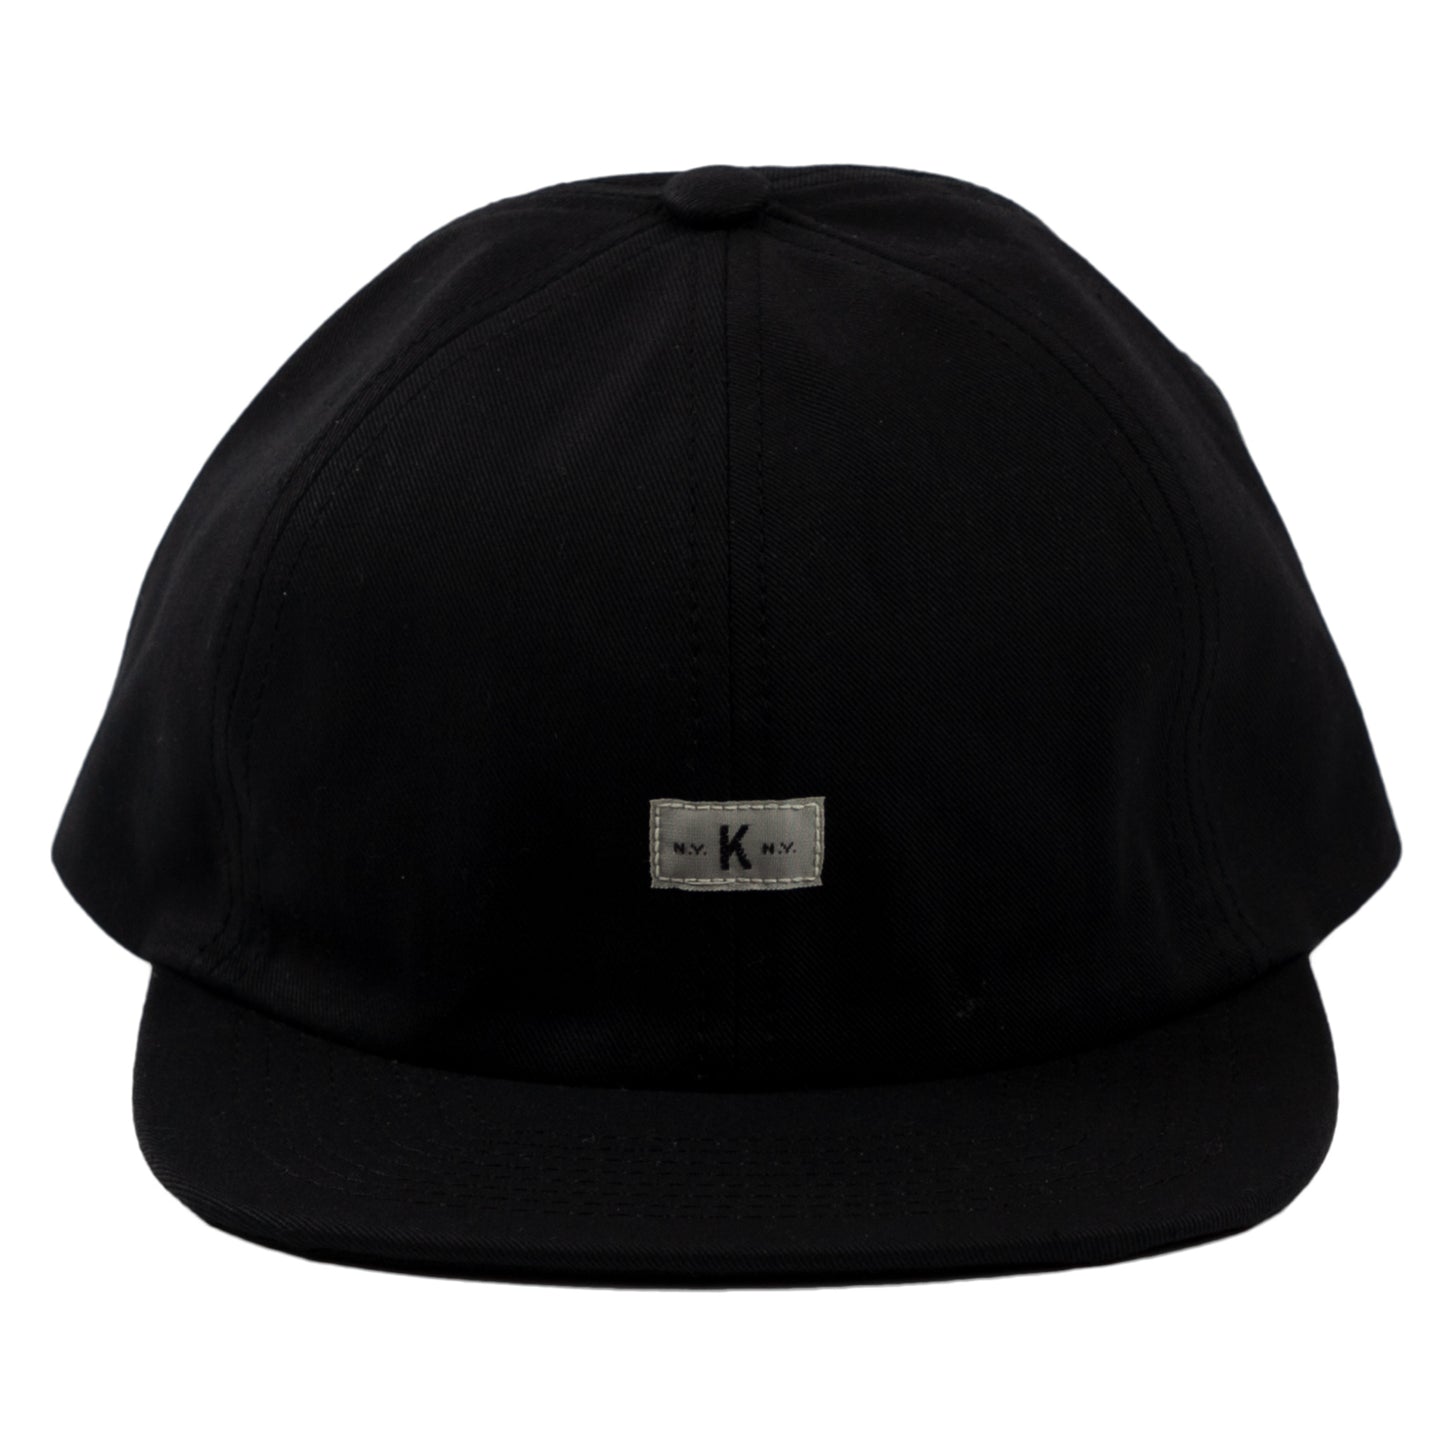 Knickerbocker Icon Ball Cap in Black head wear hat